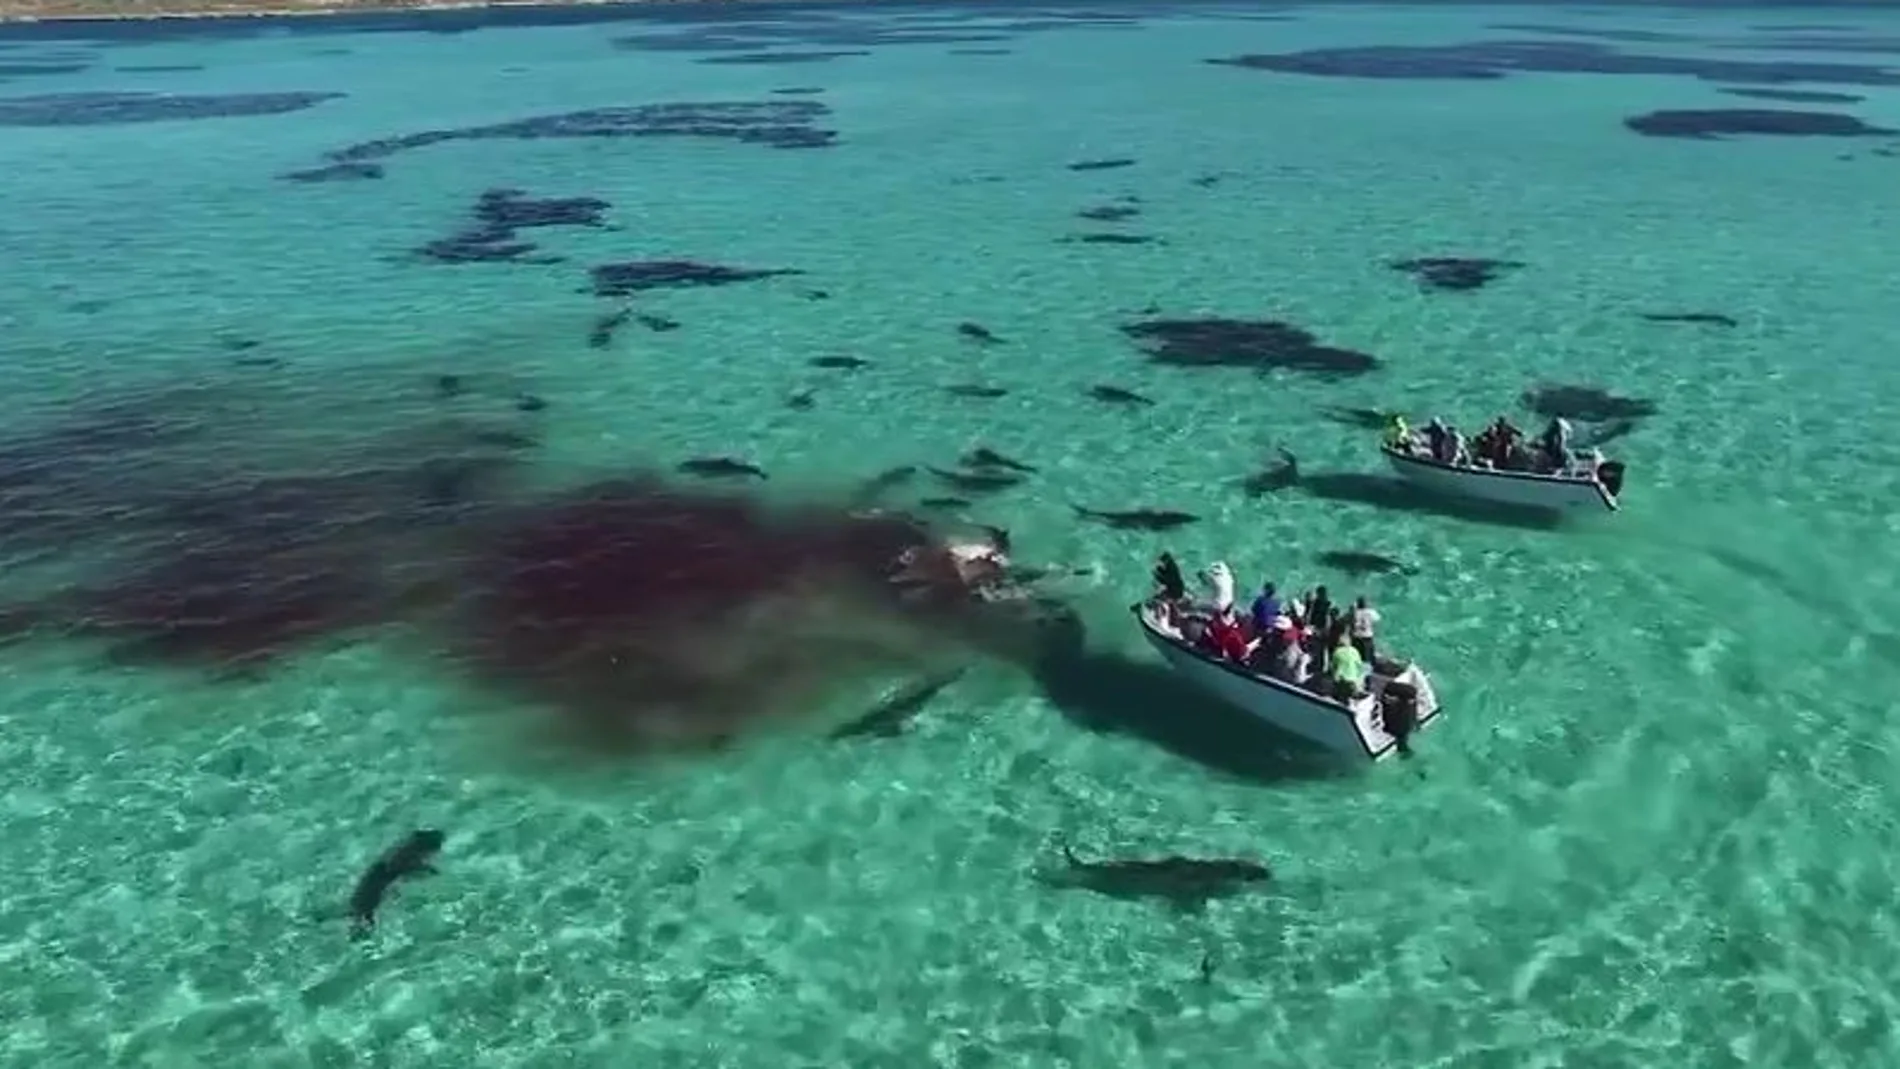 70 tiburones devoran una ballena delante de una veintena de turistas